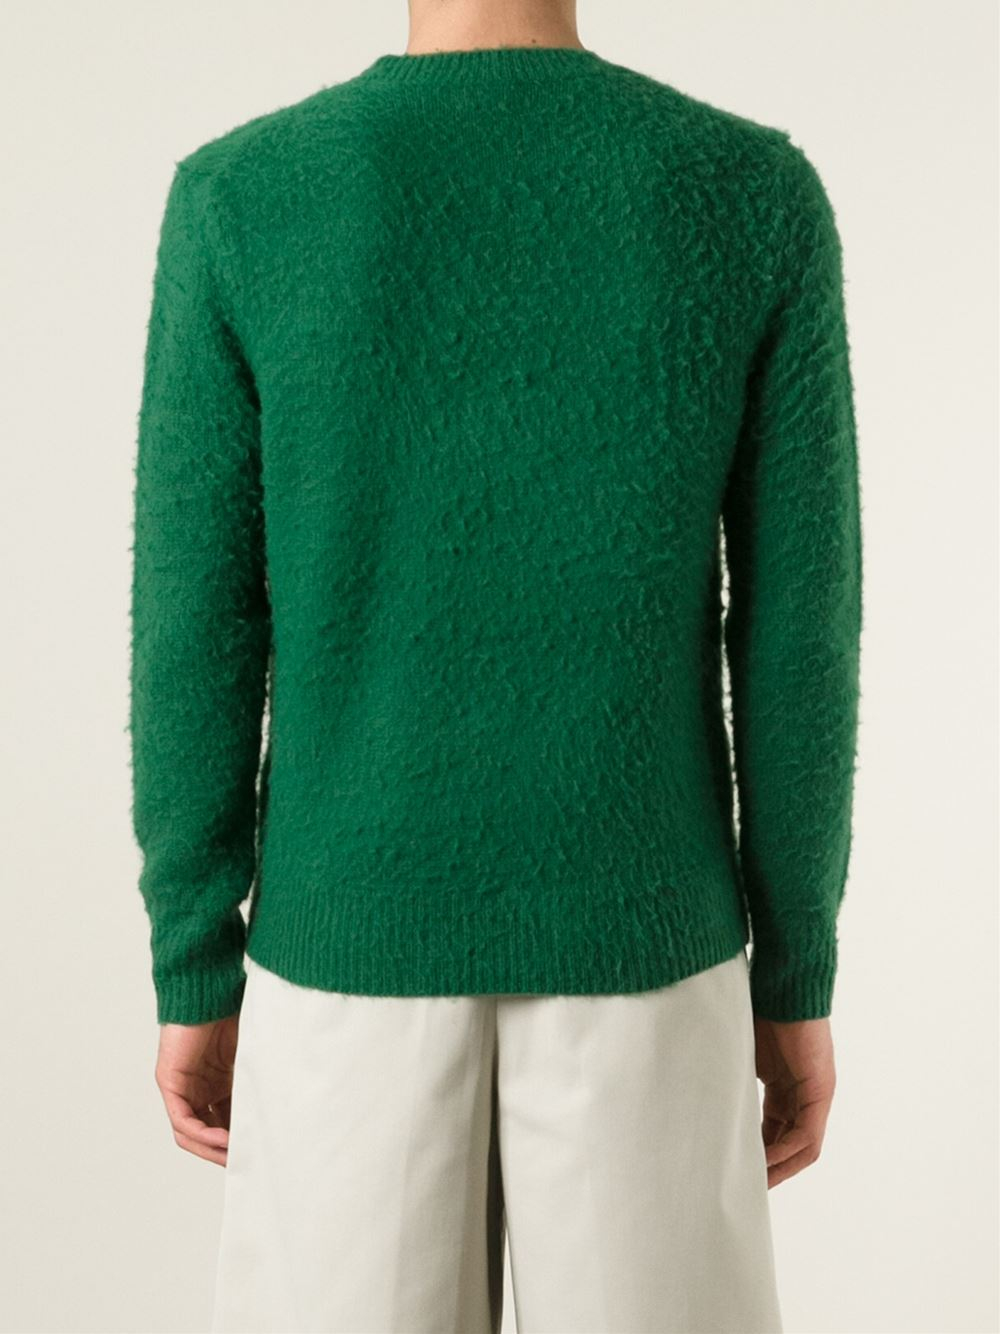 Acne Studios 'Peele' Sweater in Green for Men - Lyst